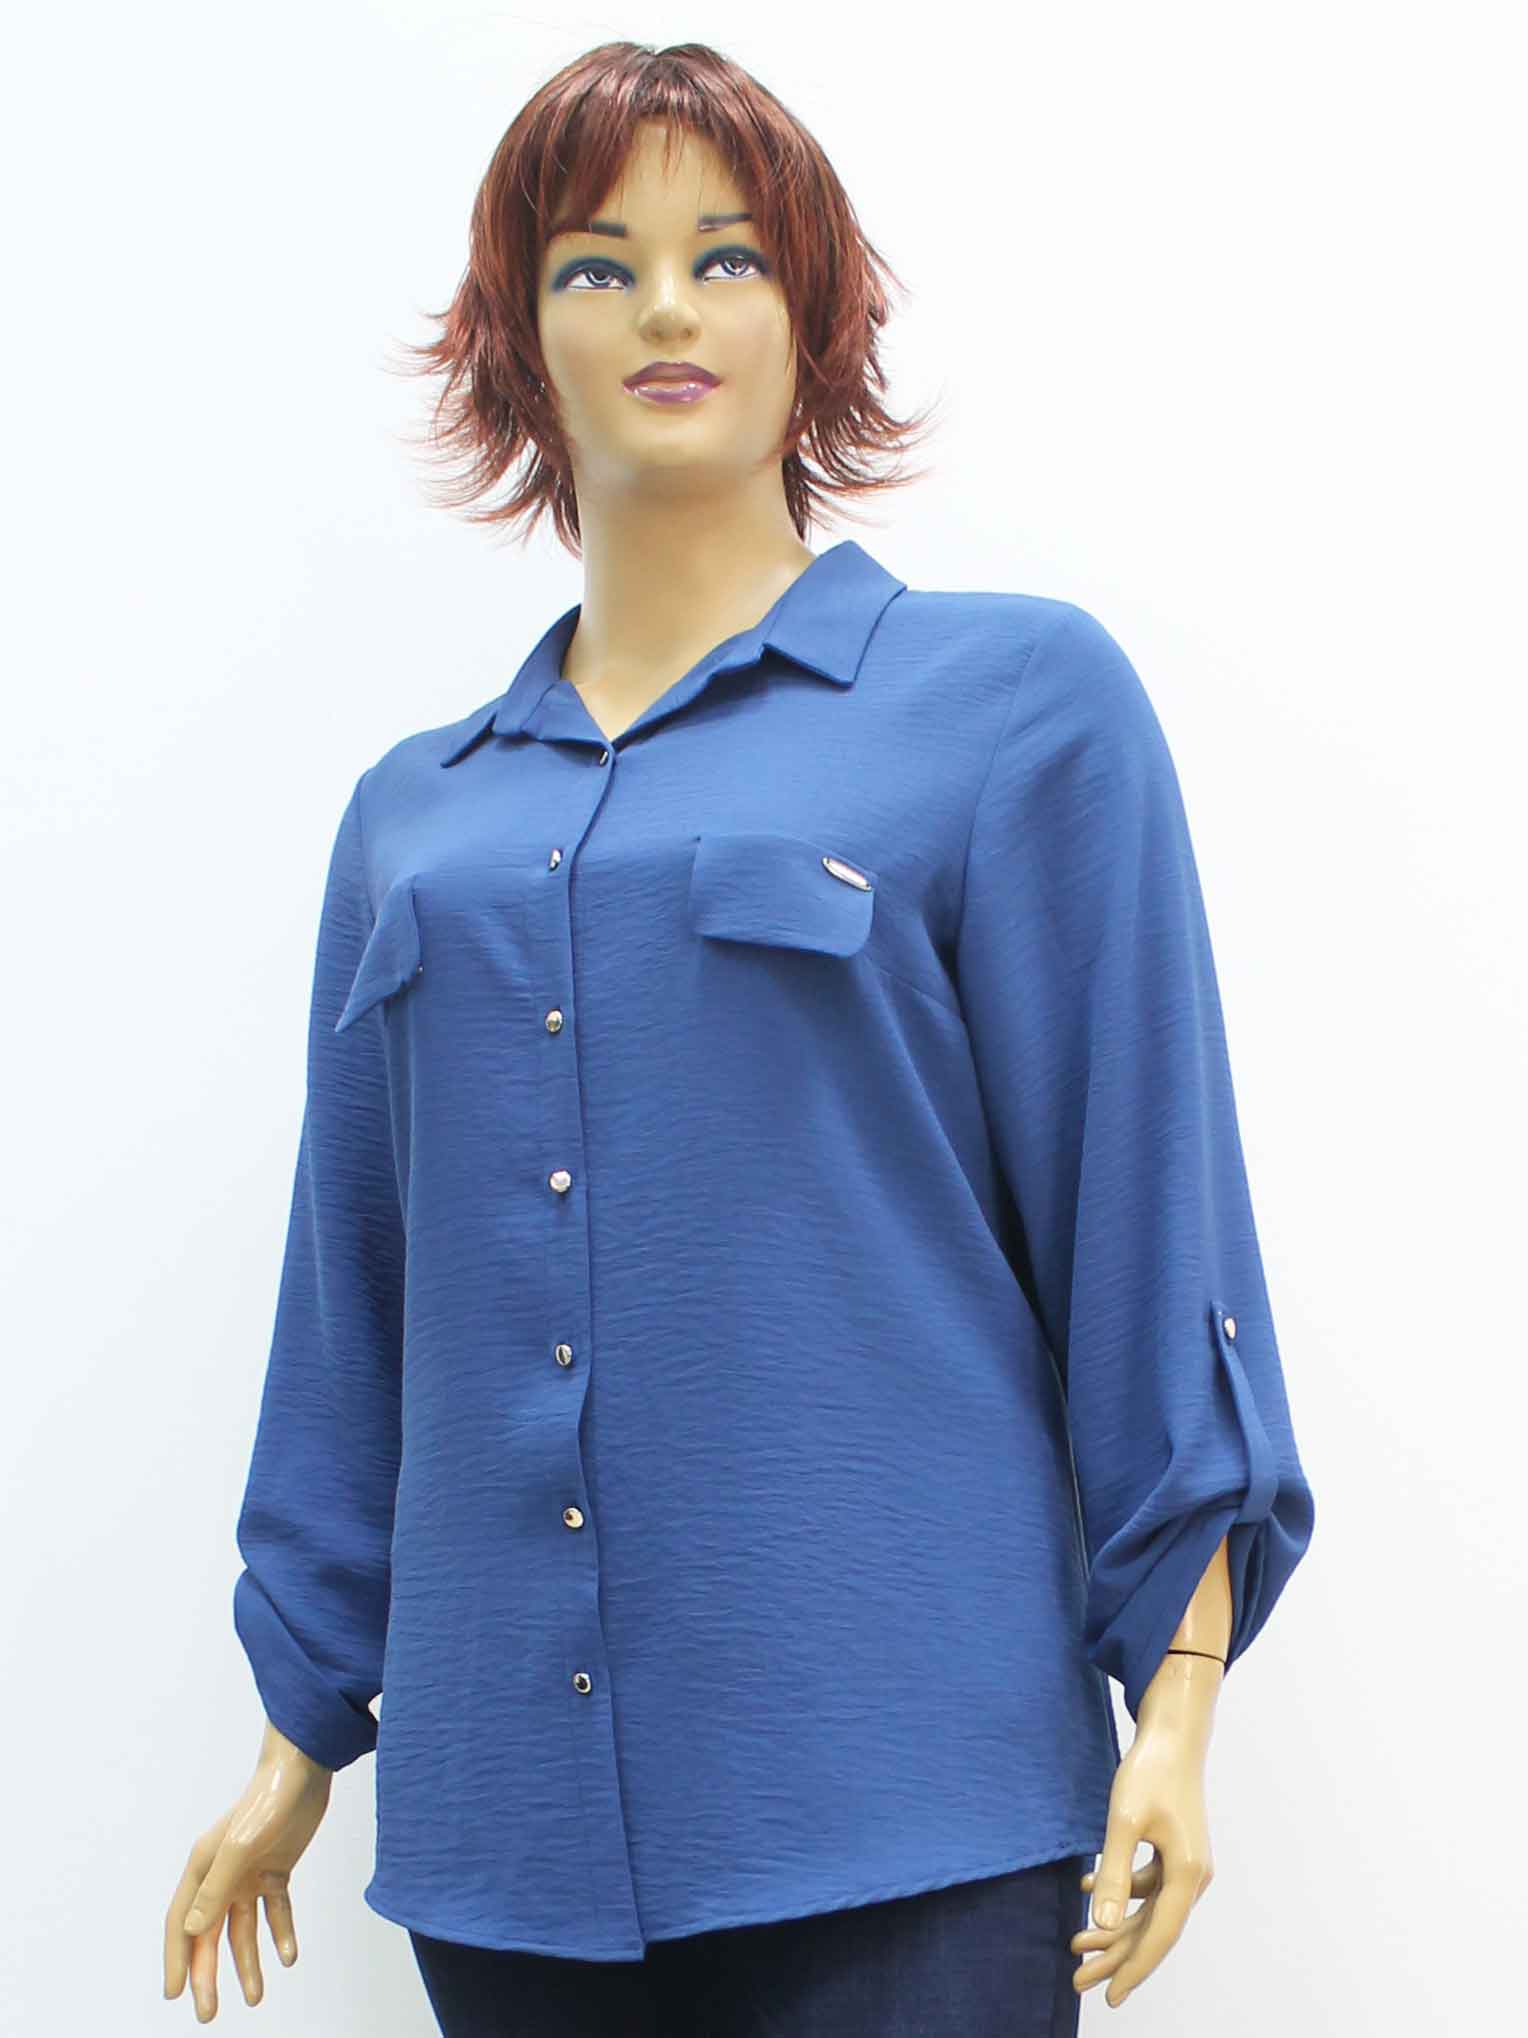 Сорочка (рубашка) женская из жатой ткани большого размера, 2020. Магазин «Пышная Дама», Луганск.